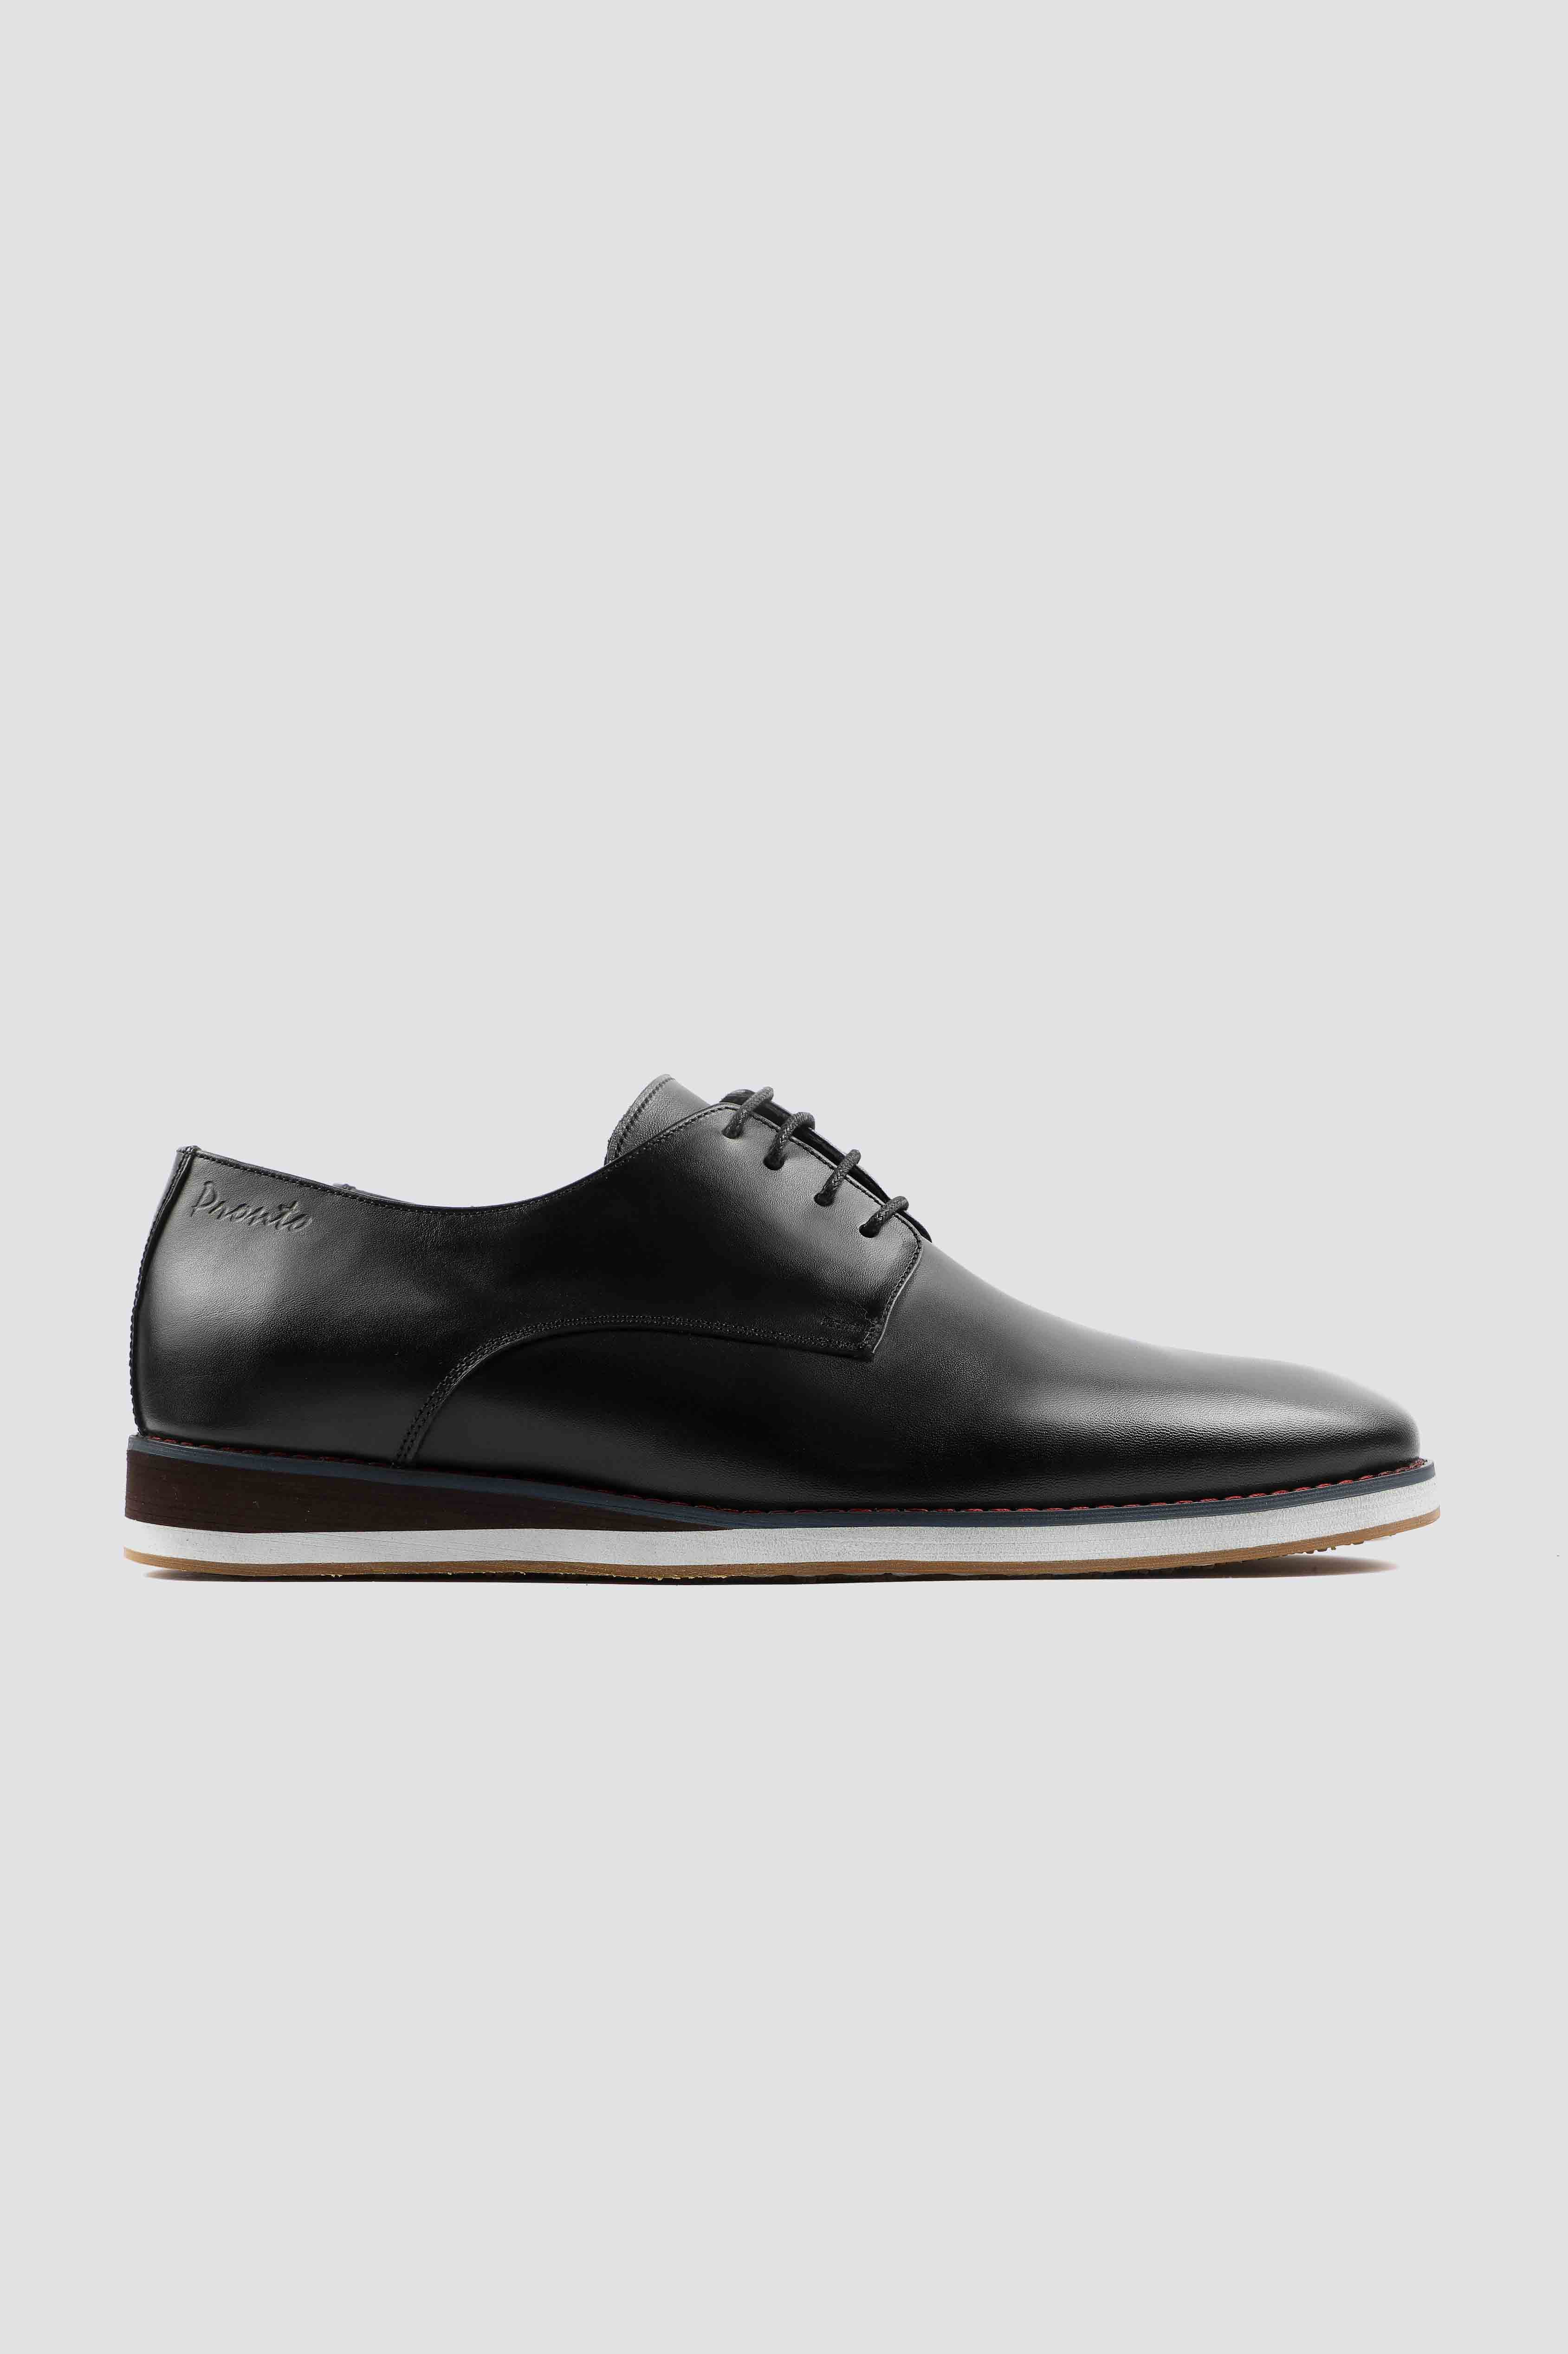 Men's shoes - leather shoes - pronto shoes